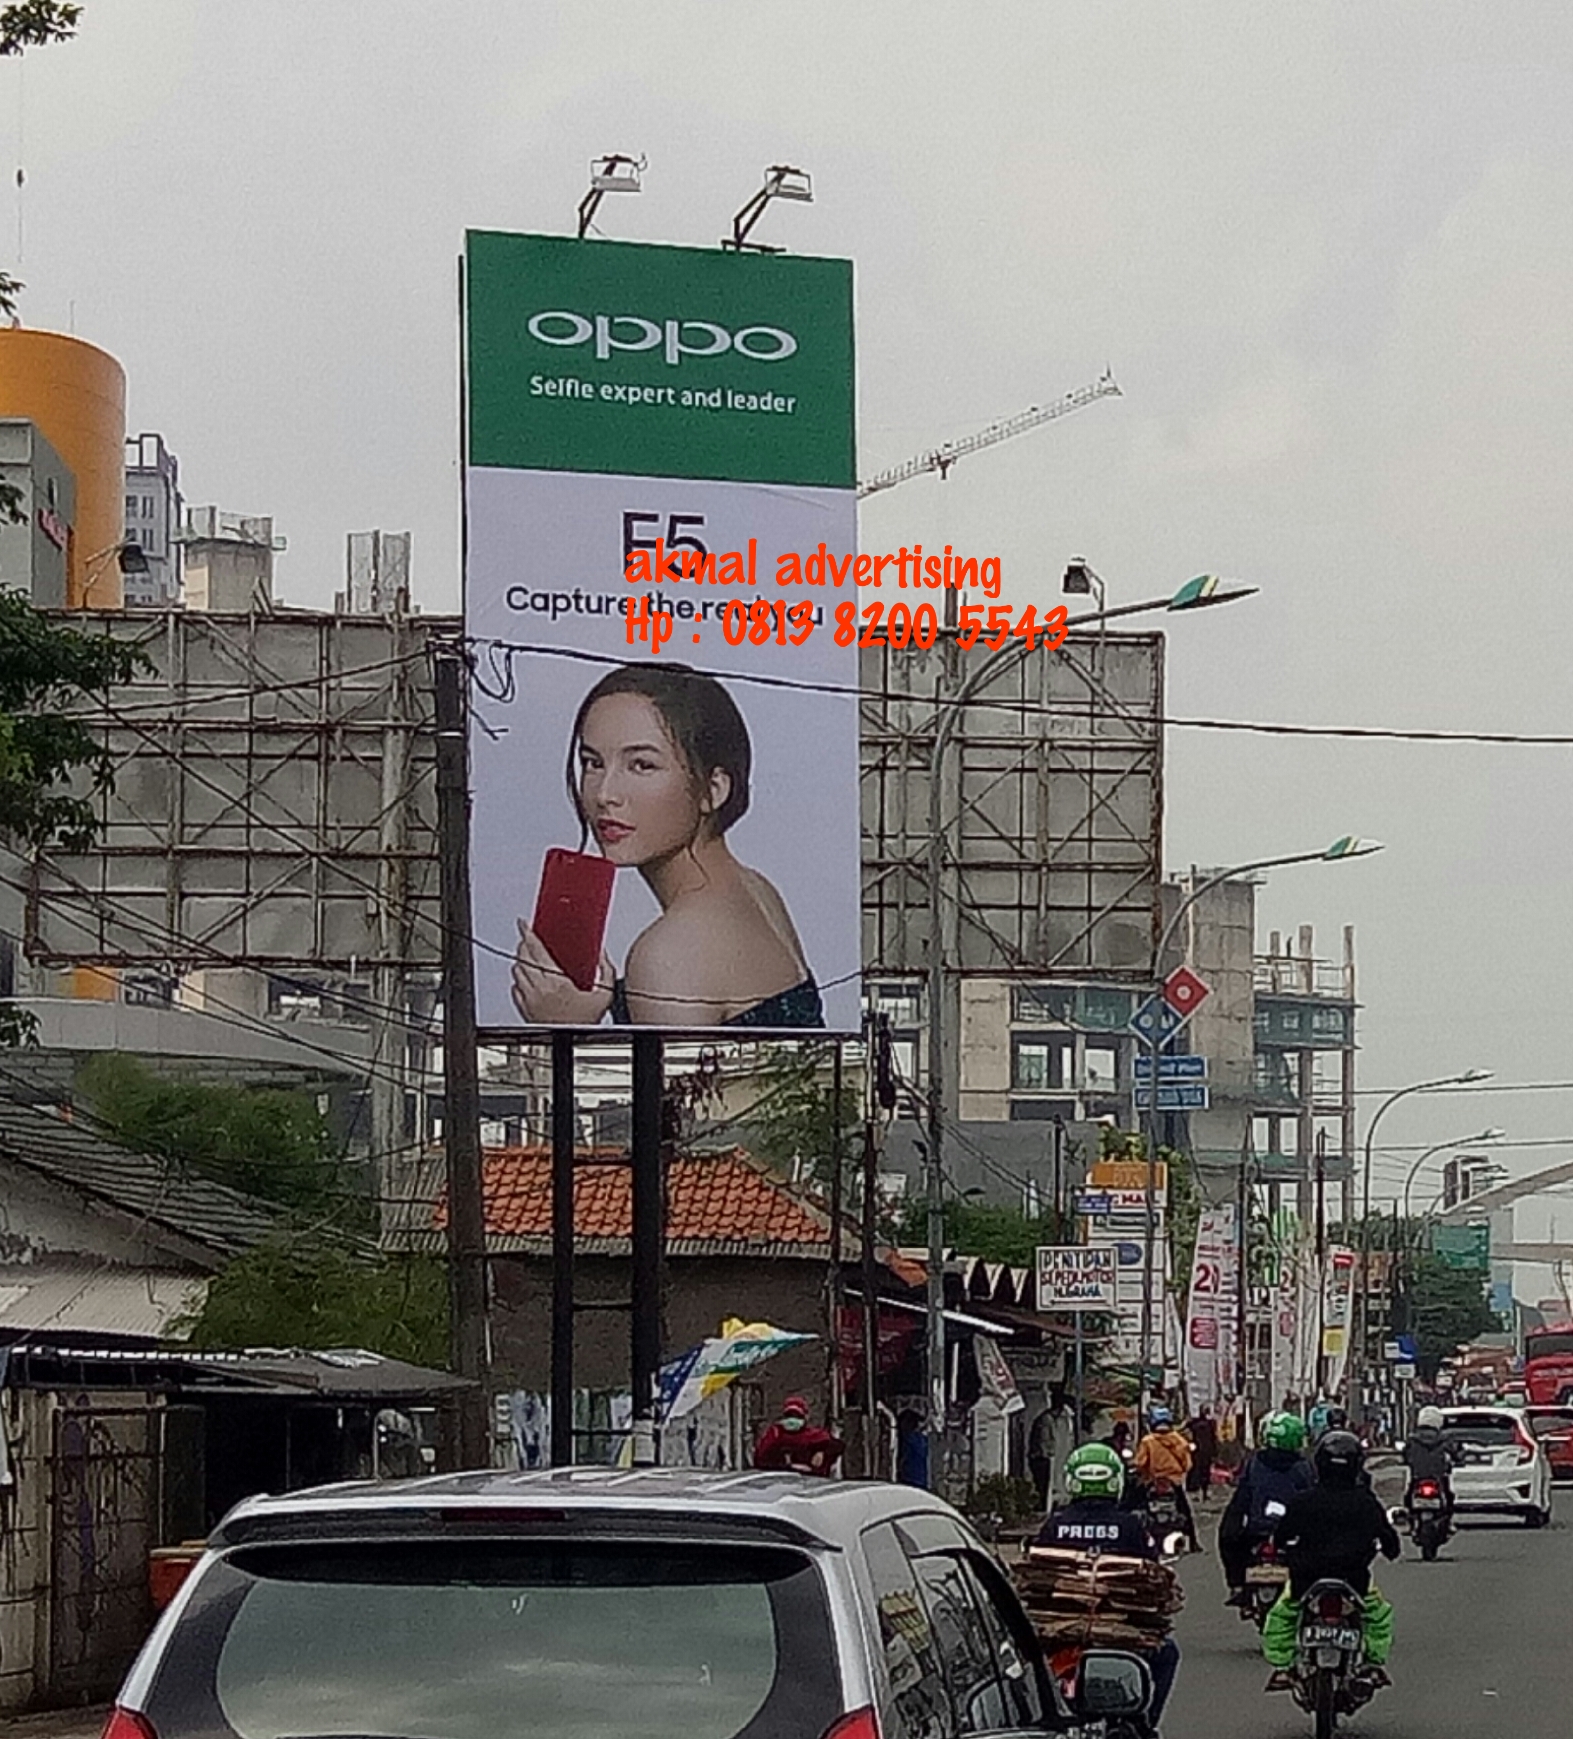 Jasa-pemasangan-billboard-bogor